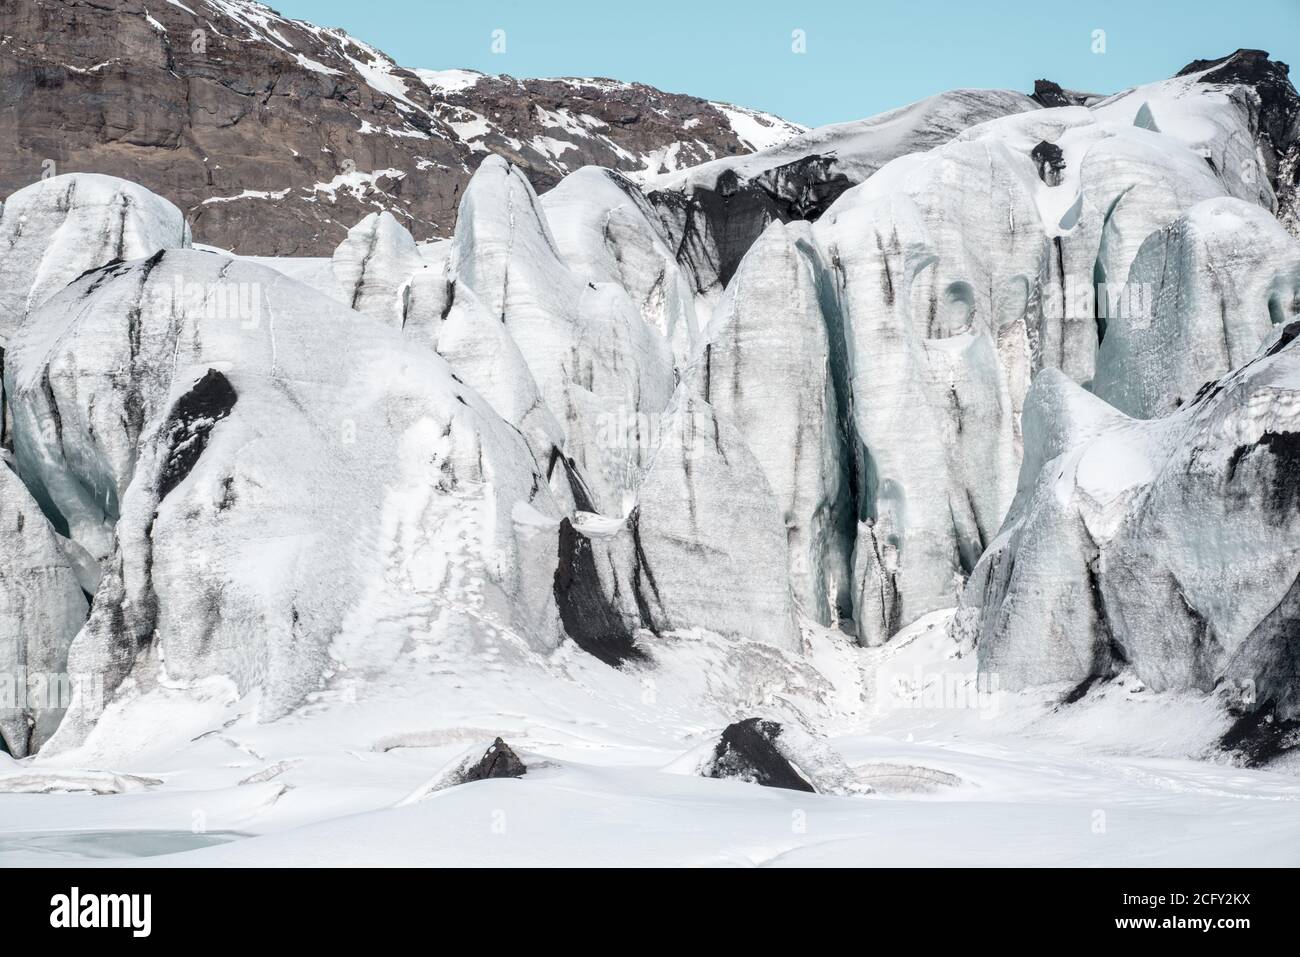 Glacier de Solheimajokull, sud de l'Islande Banque D'Images